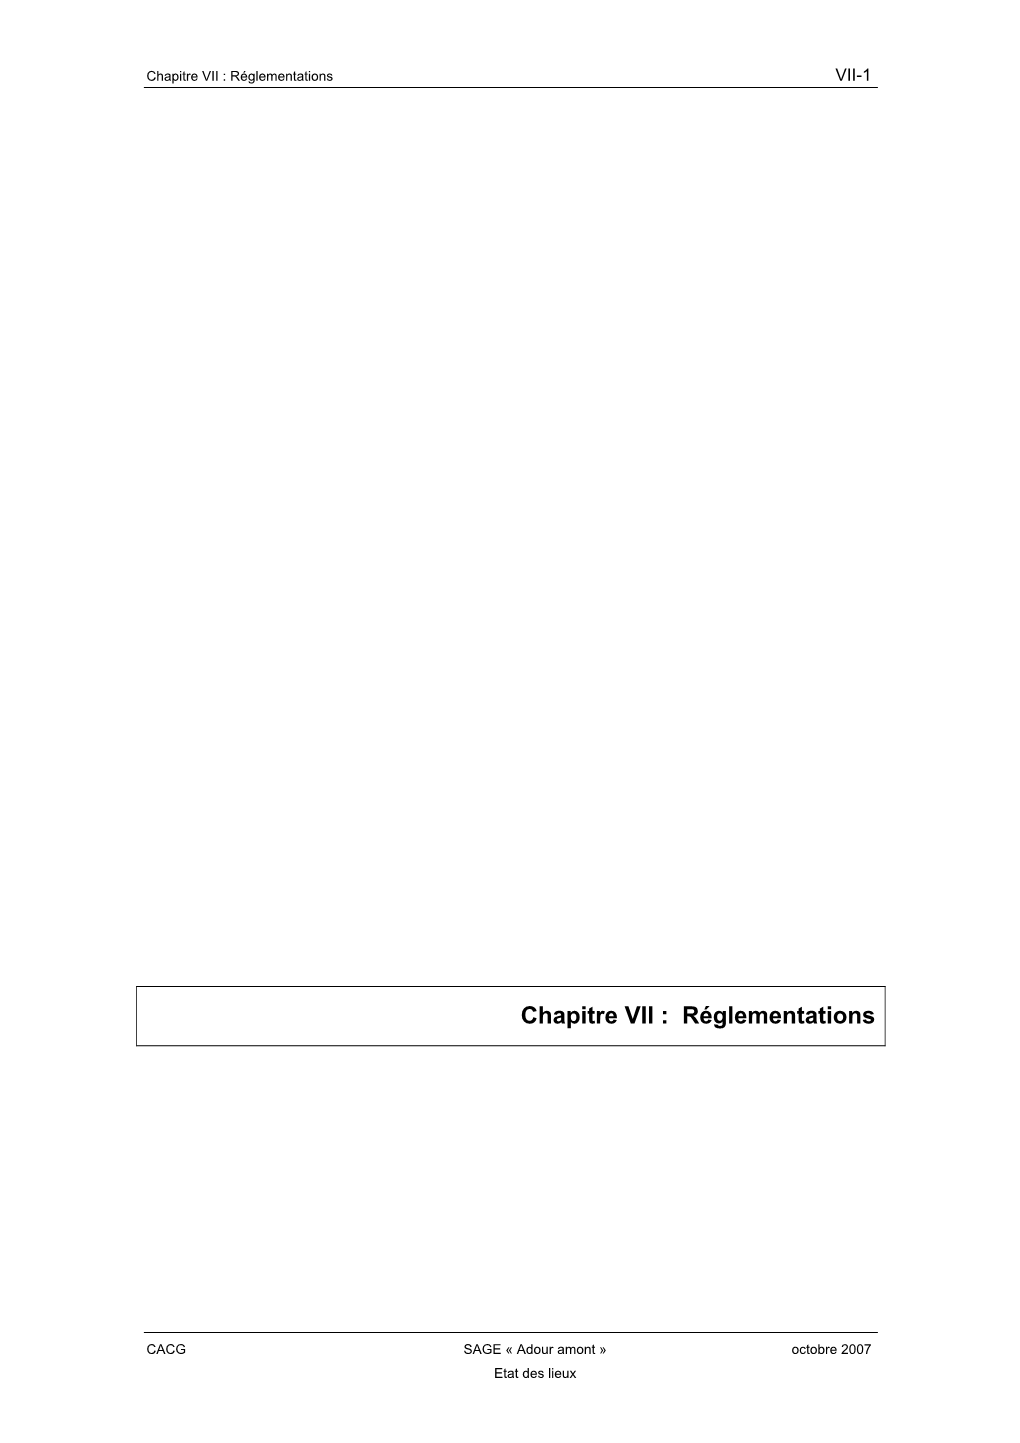 Chapitre VII : Réglementations VII-1